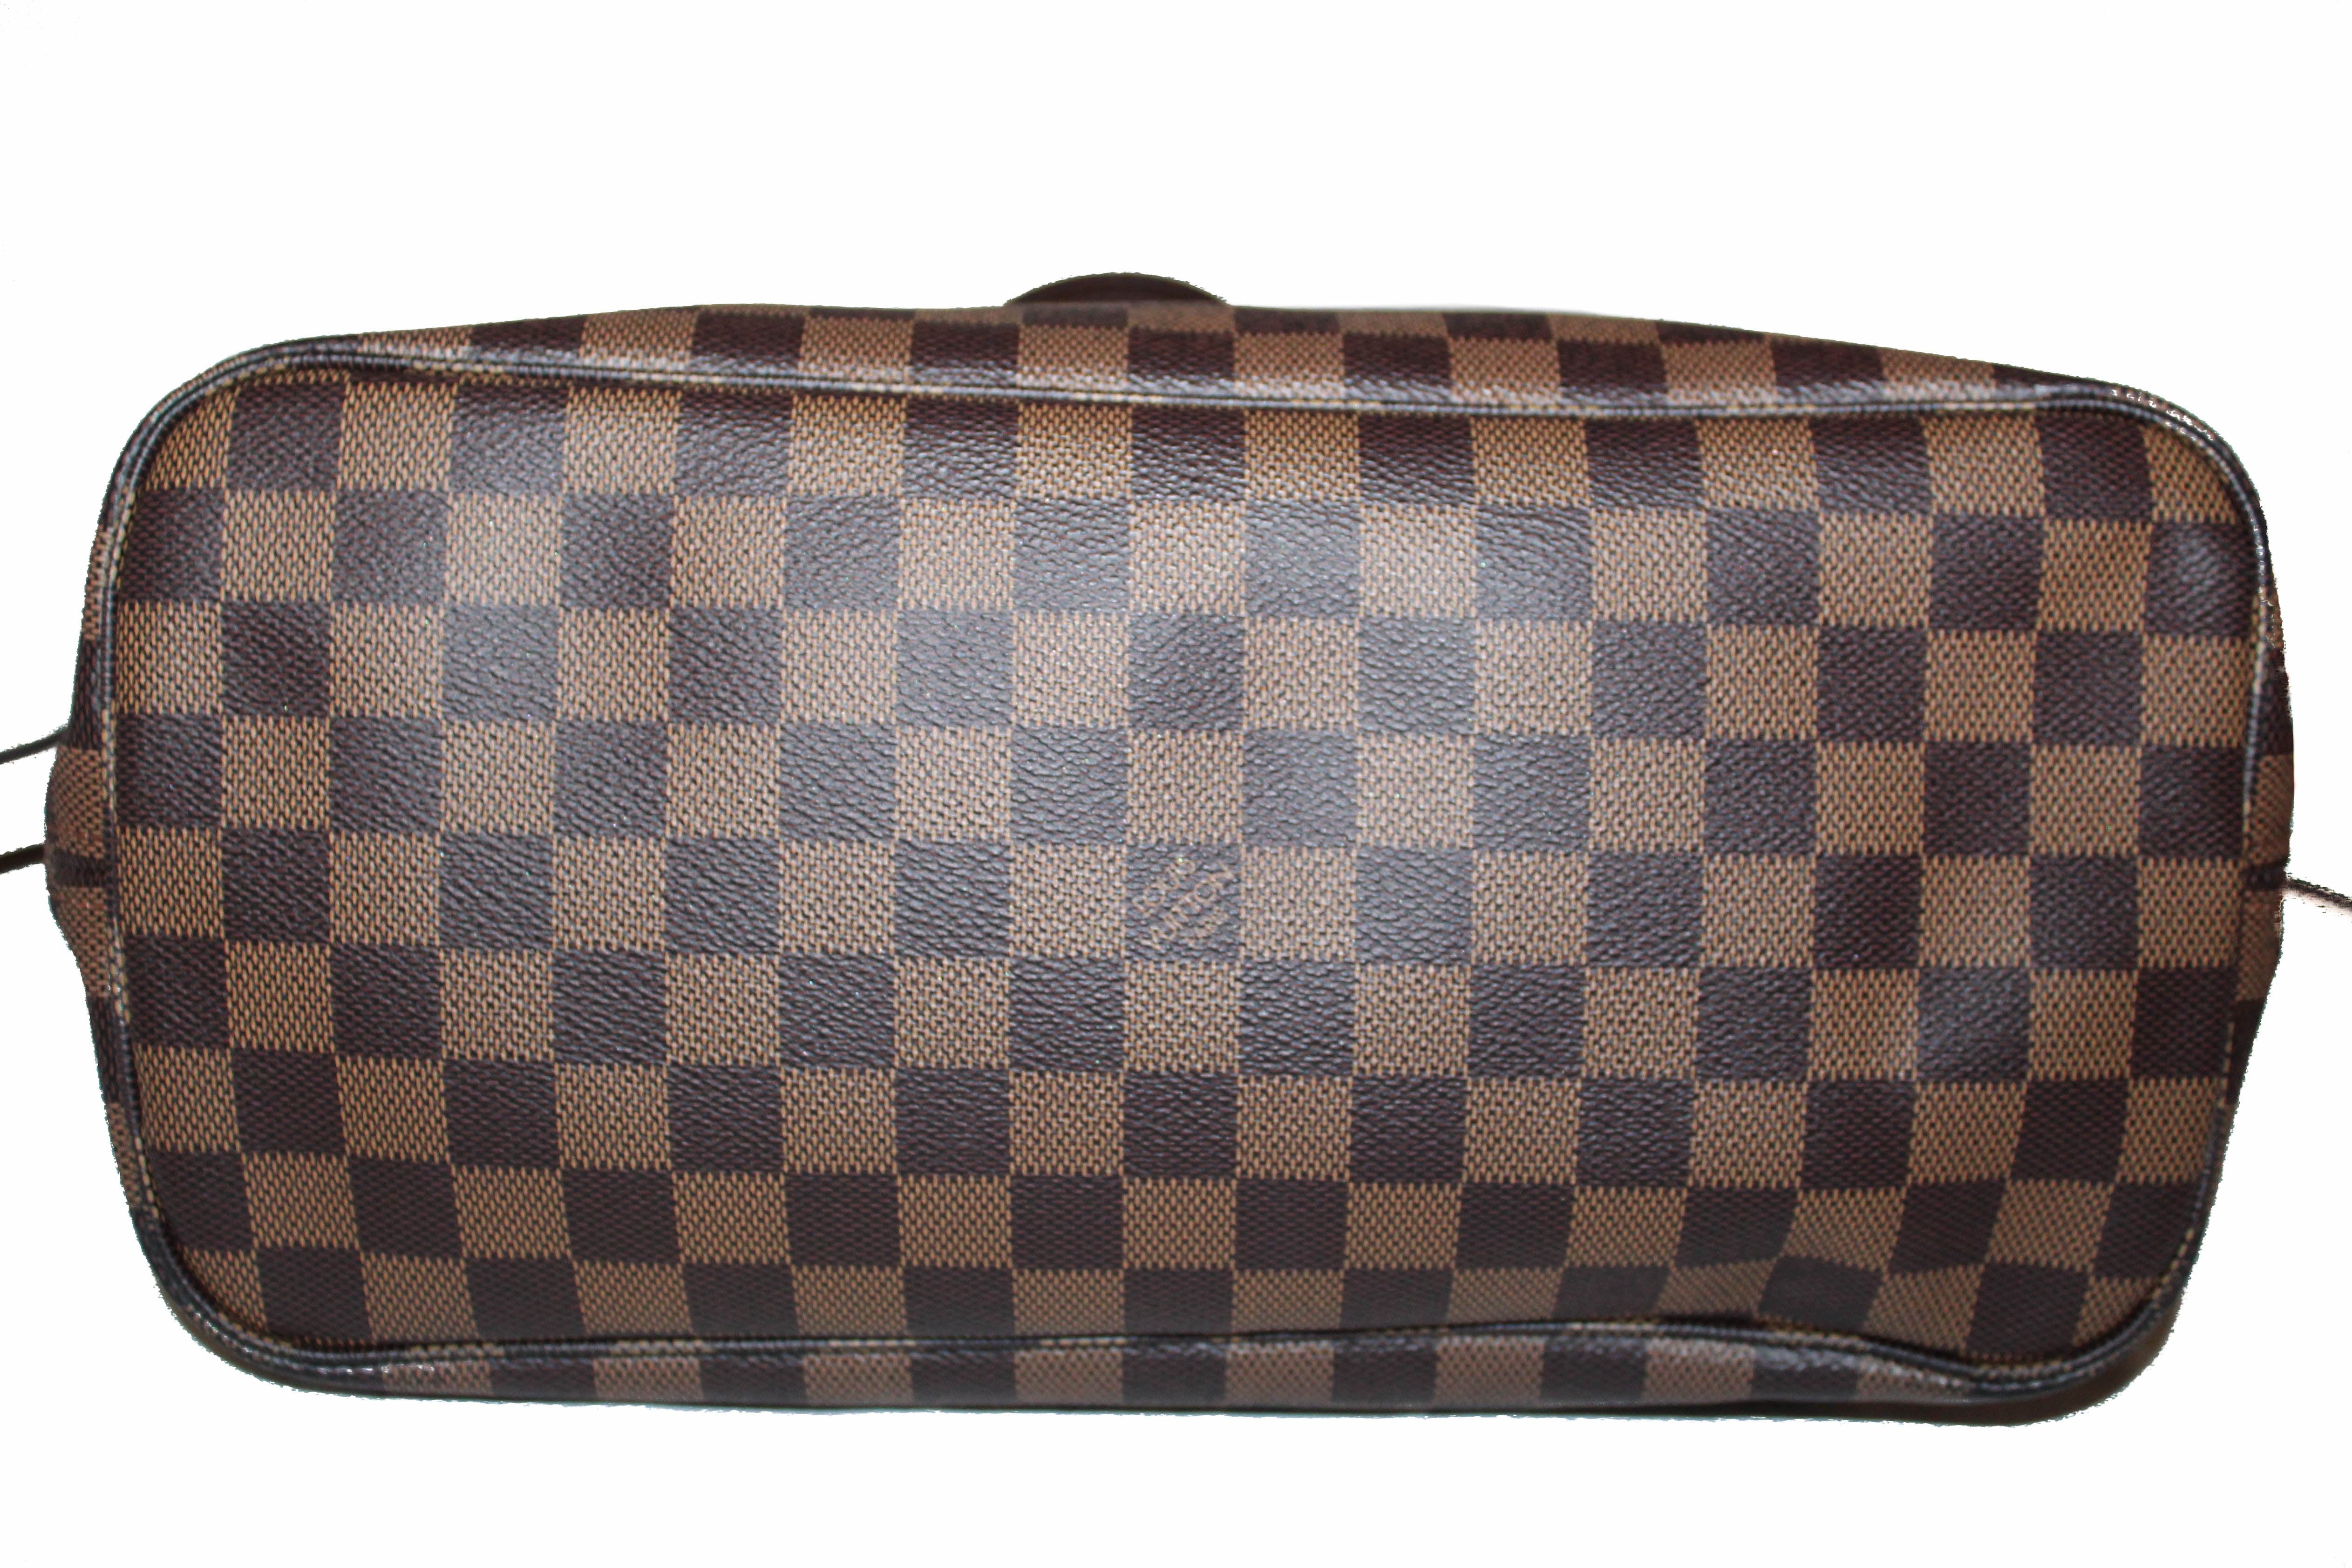 Authentic Louis Vuitton Damier Ebene Canvas Neverfull Tote Shoulder Bag